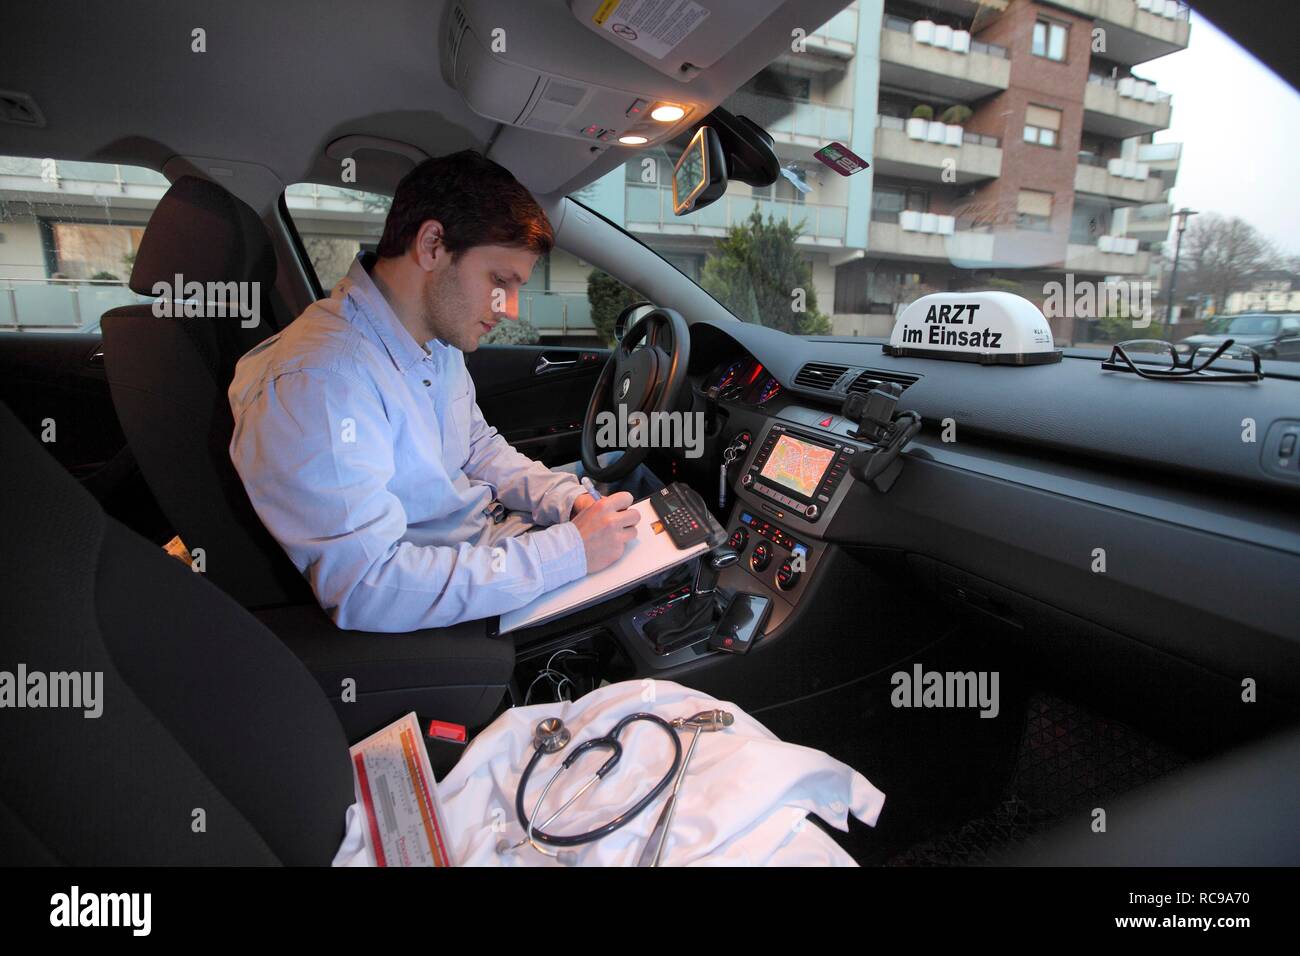 Les jeunes GP, médecin de la prise de notes dans sa voiture après une visite à domicile, car l'affichage du symbole "Arzt im Einsatz' Banque D'Images